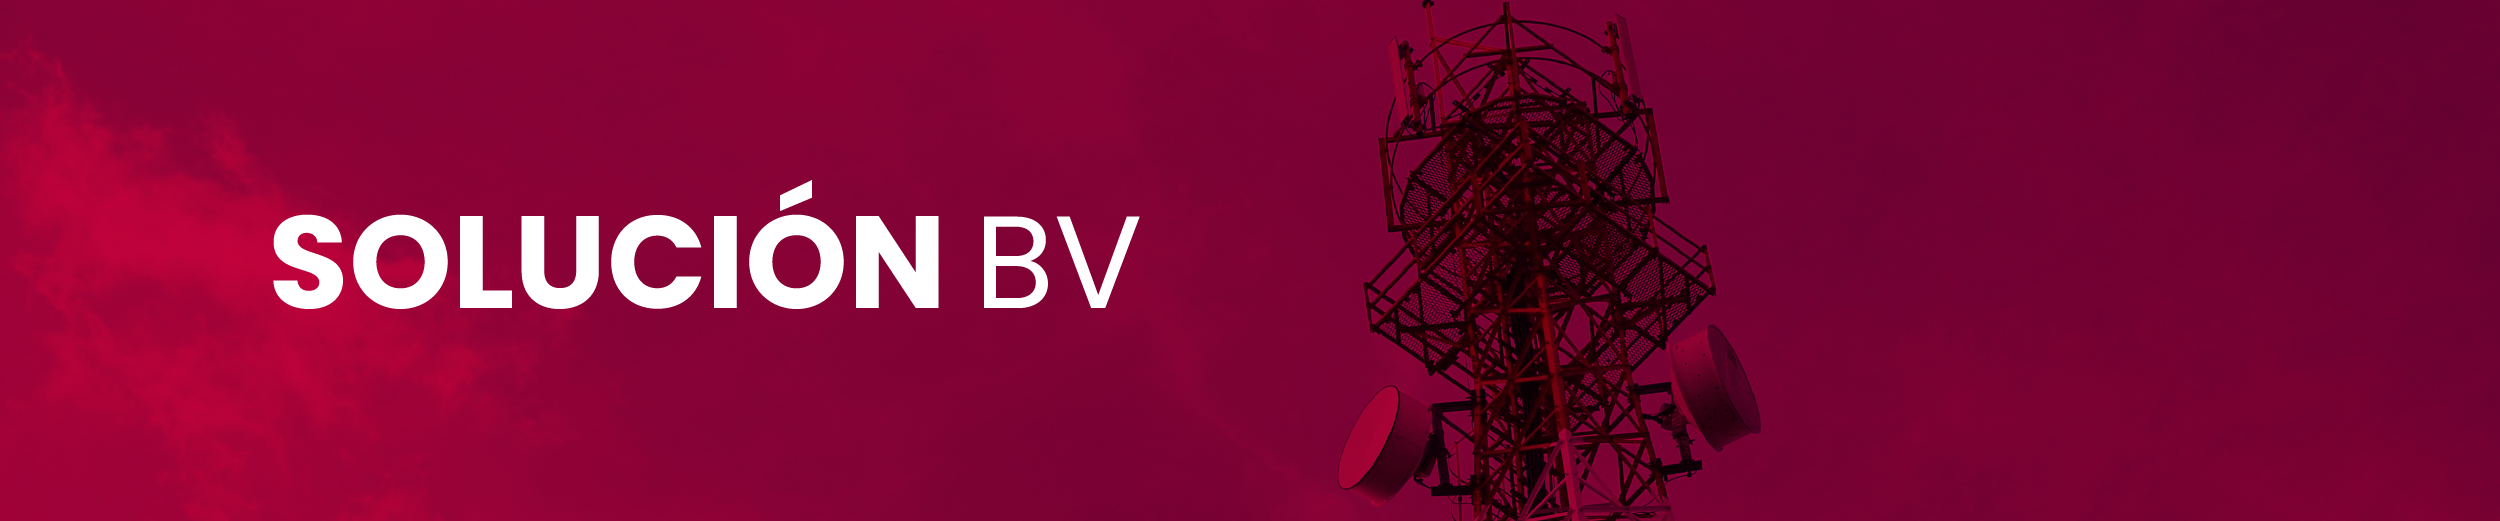 Banner solución BV Telecomunicaciones